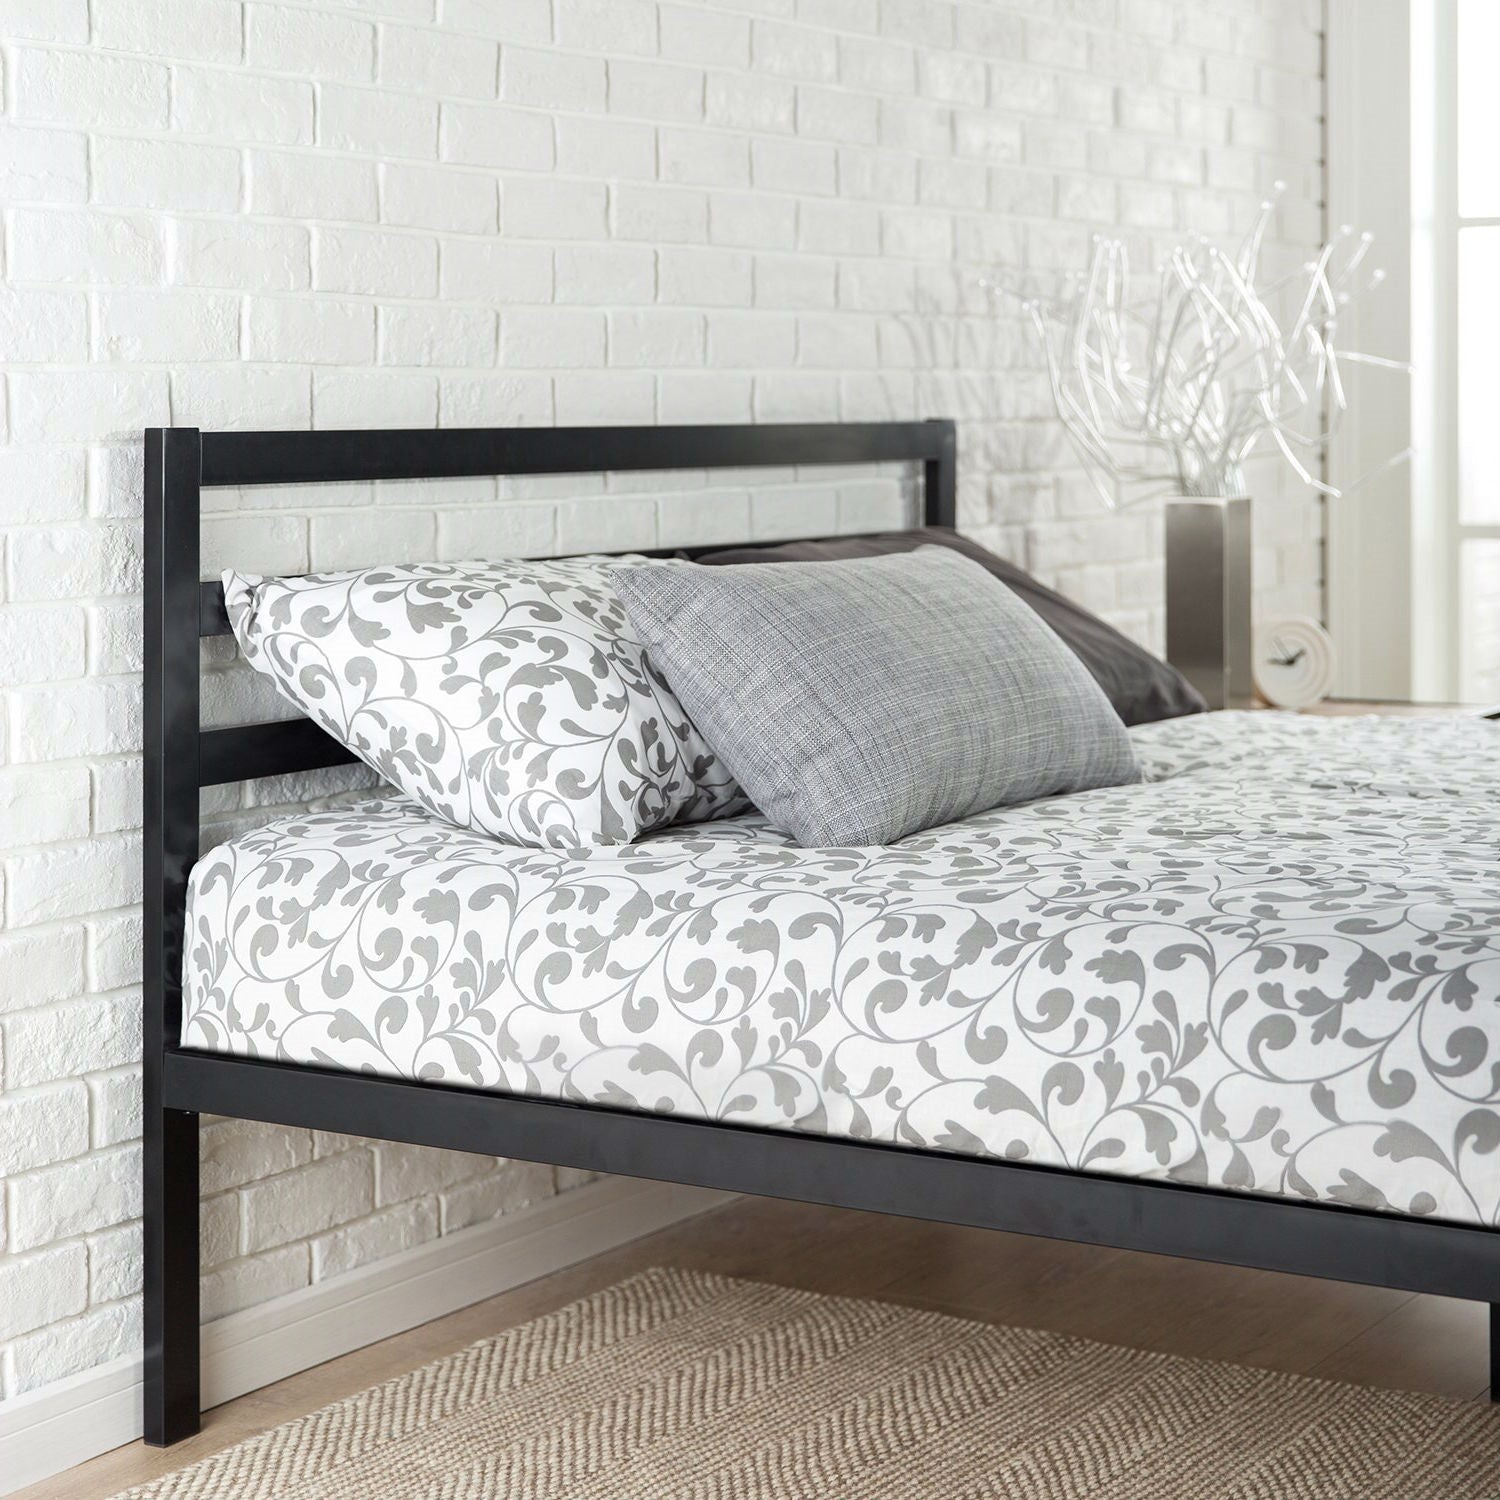 Bedroom > Bed Frames > Platform Beds - Full Metal Platform Bed With Headboard And Wood Slats